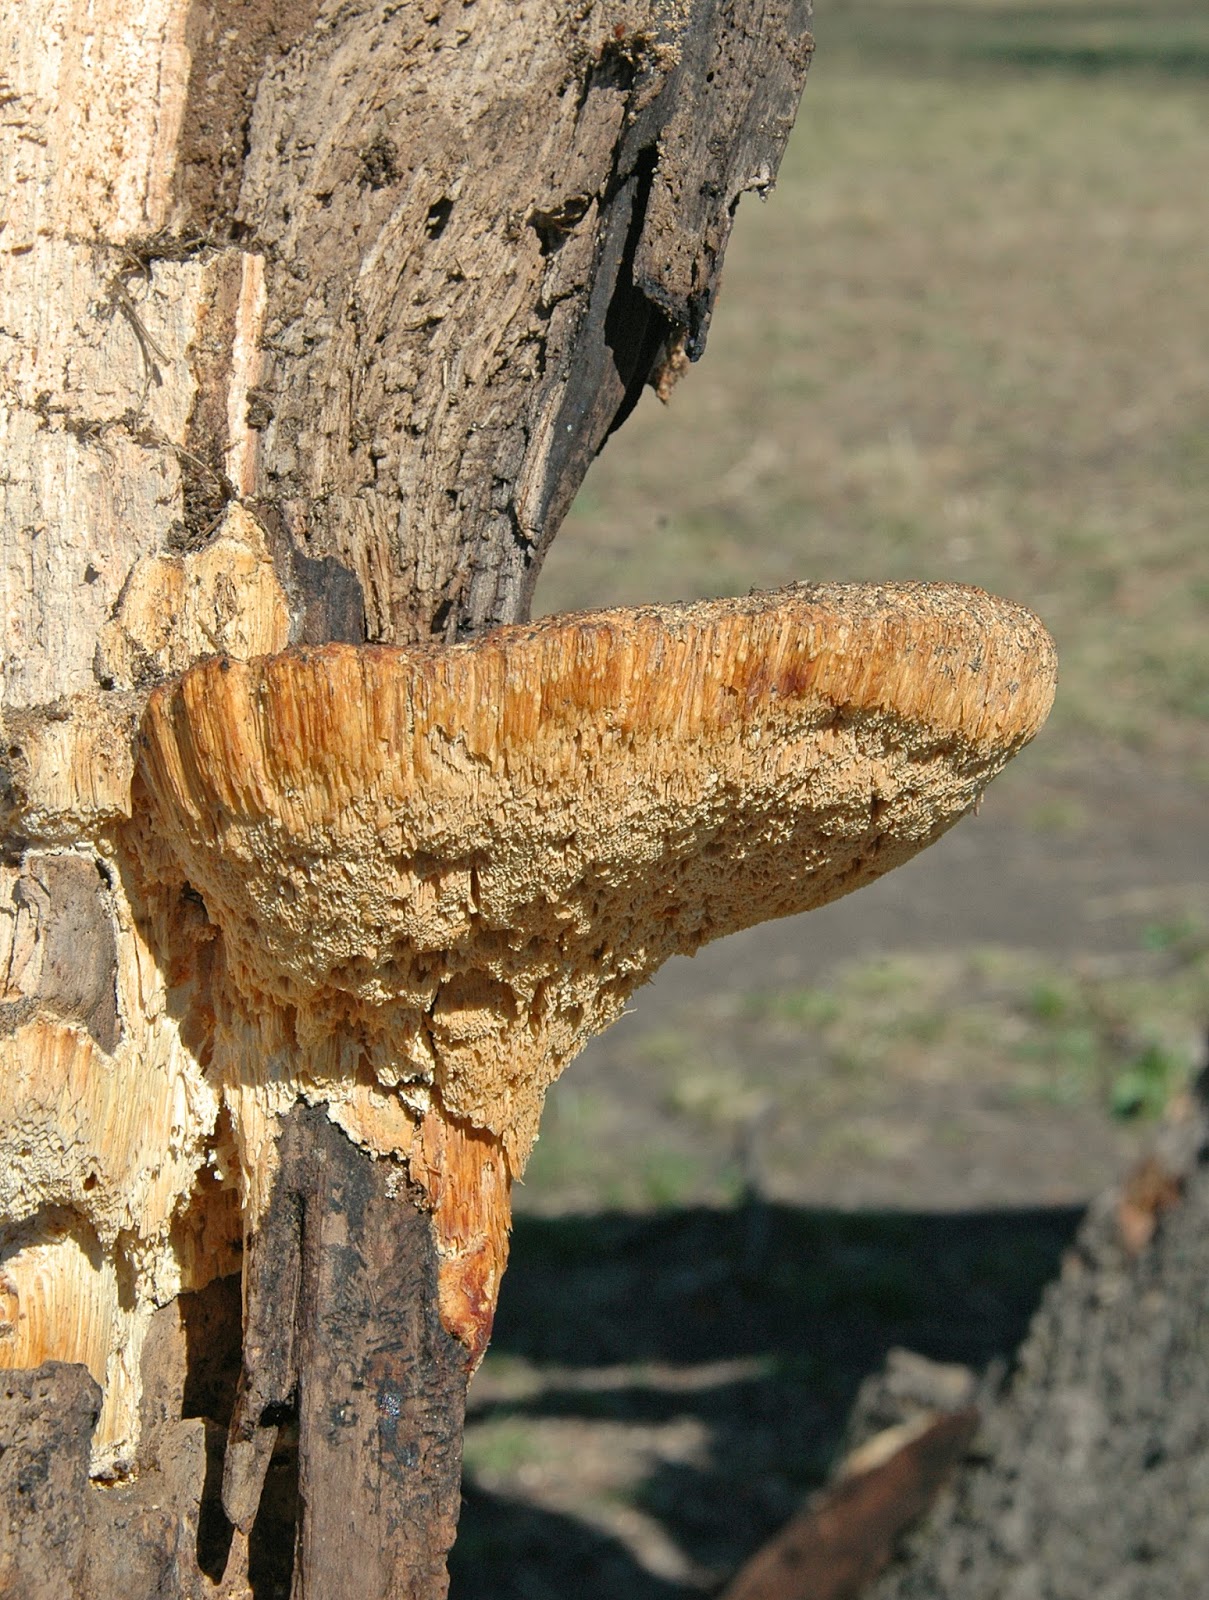 Northern Pecans Big native pecan tree weakened by wood rot